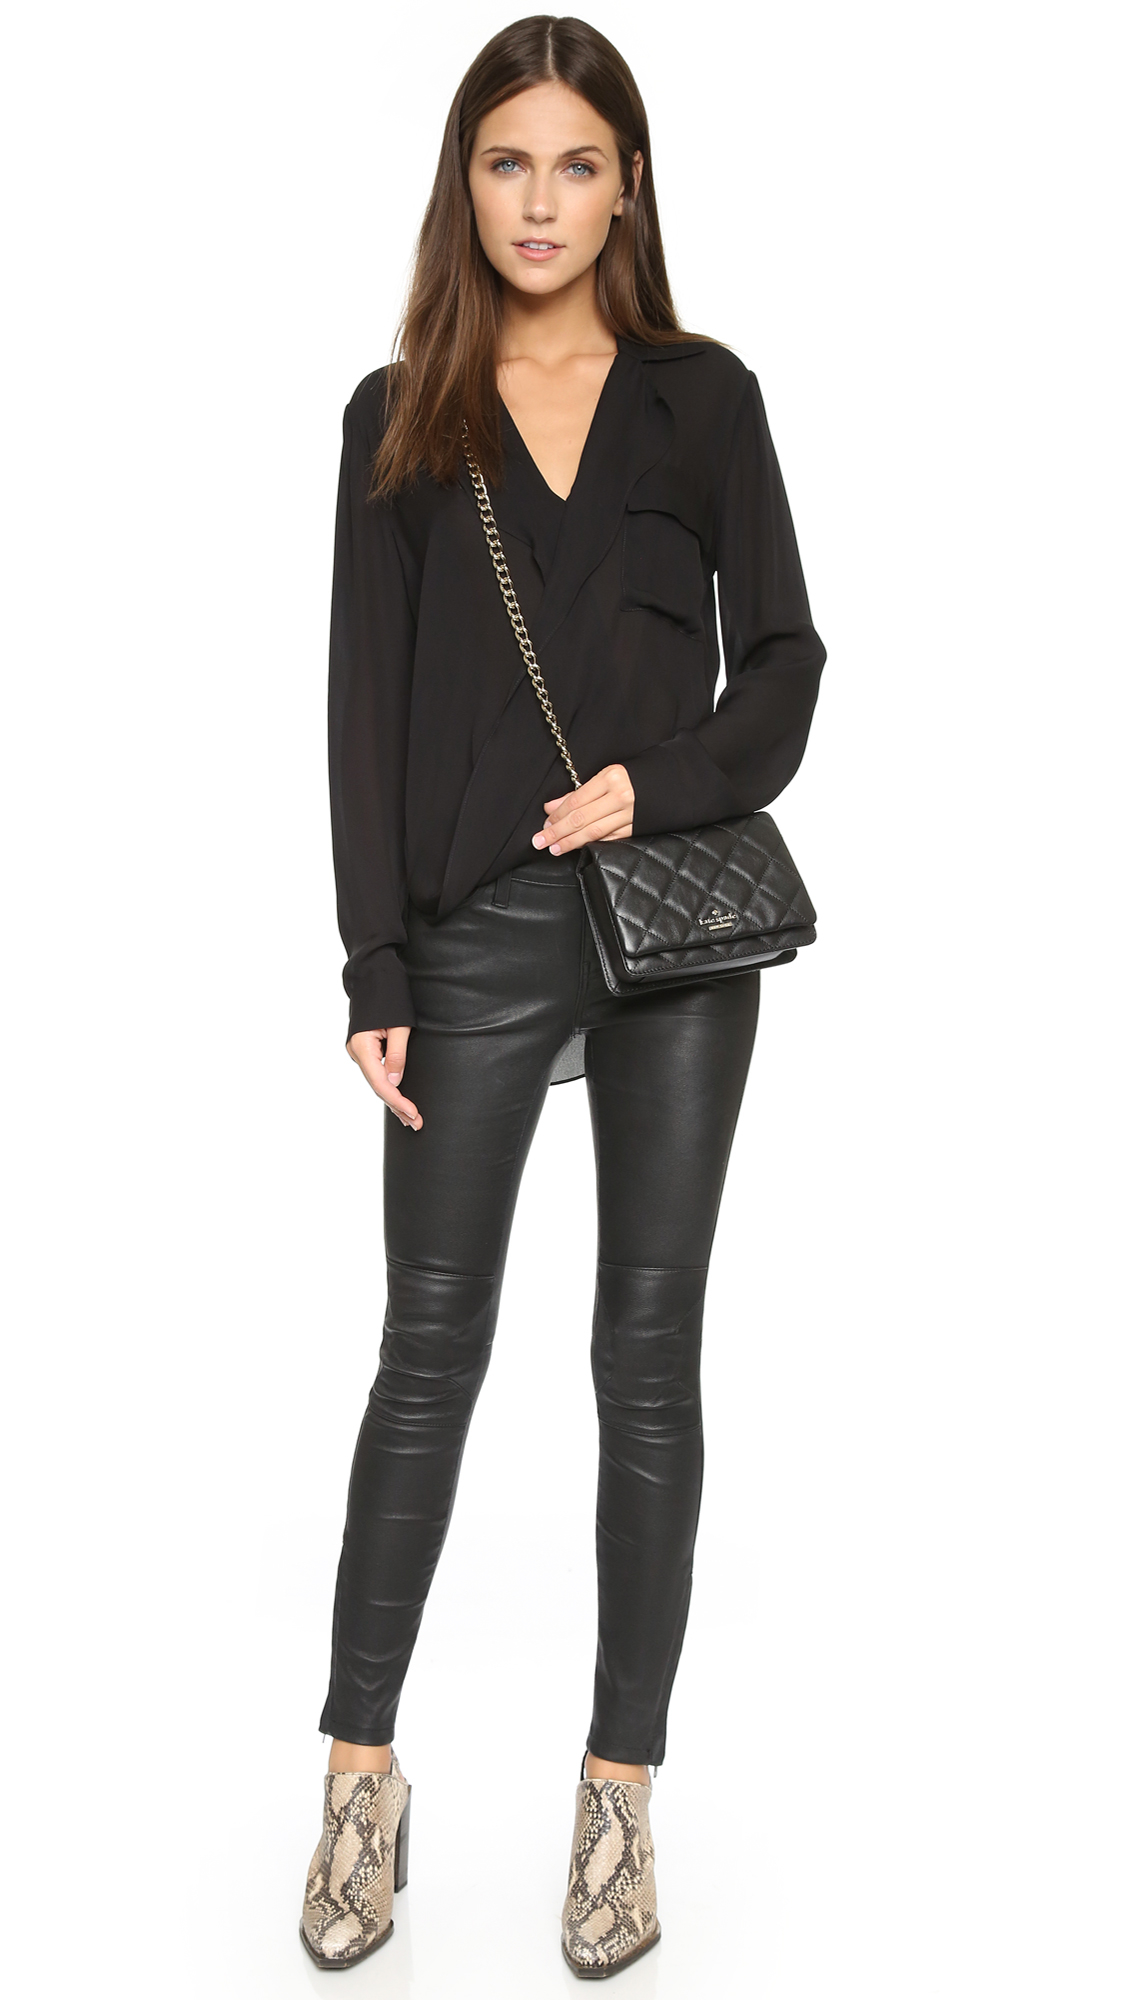 Kate Spade Mini Vivenna Cross Body Bag - Black in Black - Lyst